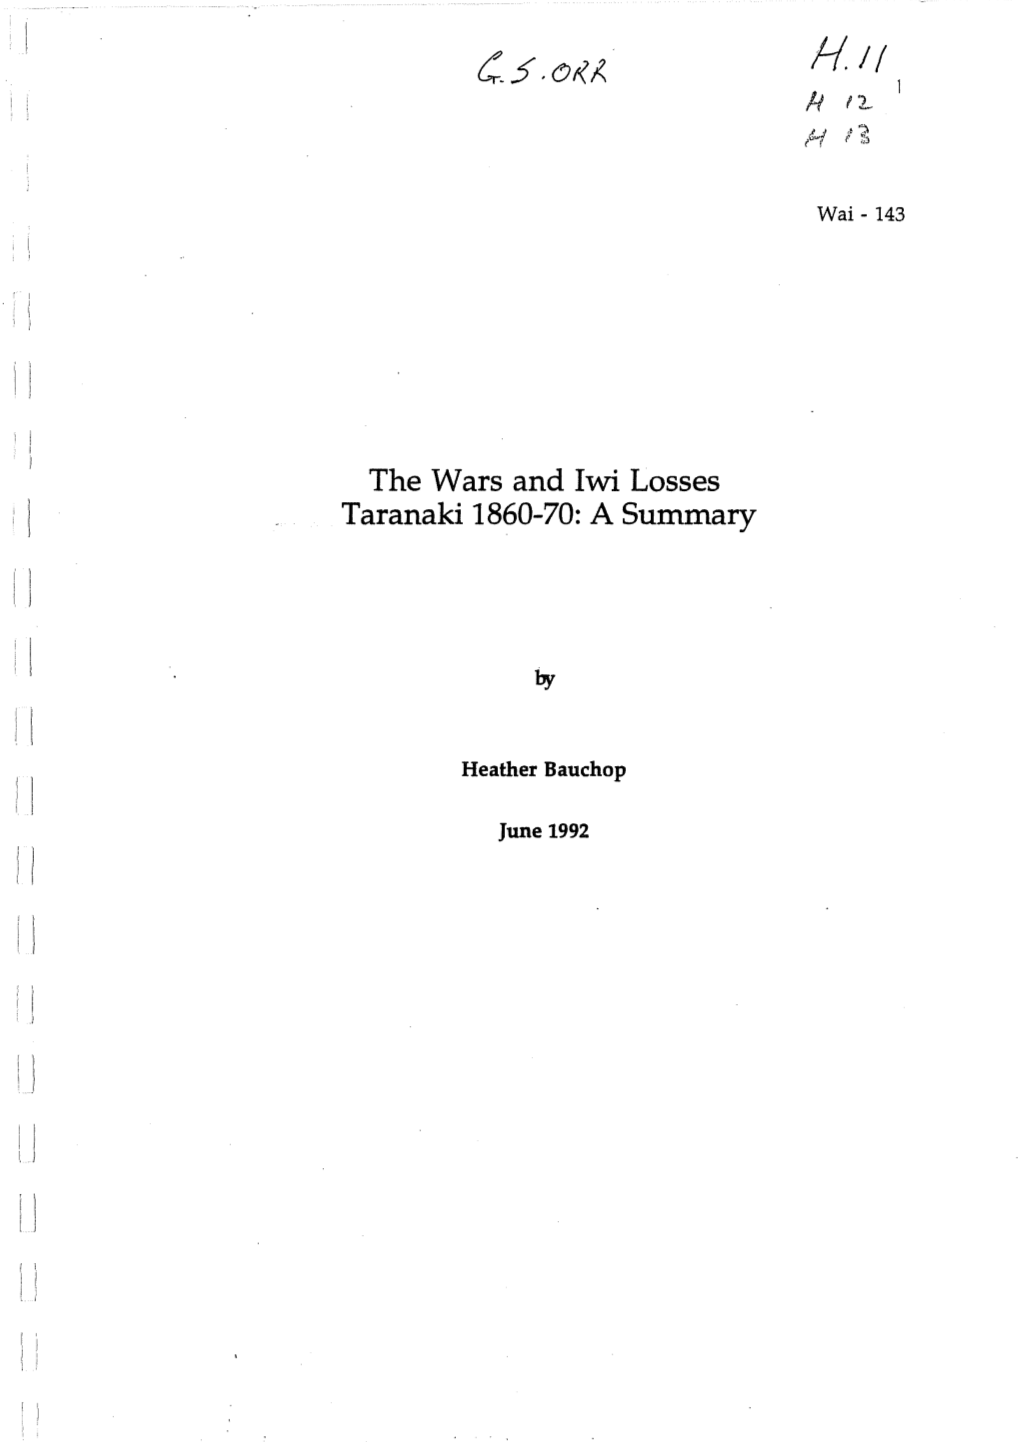 The Wars and Lwi Losses Taranaki 1860-70: a Summary 11